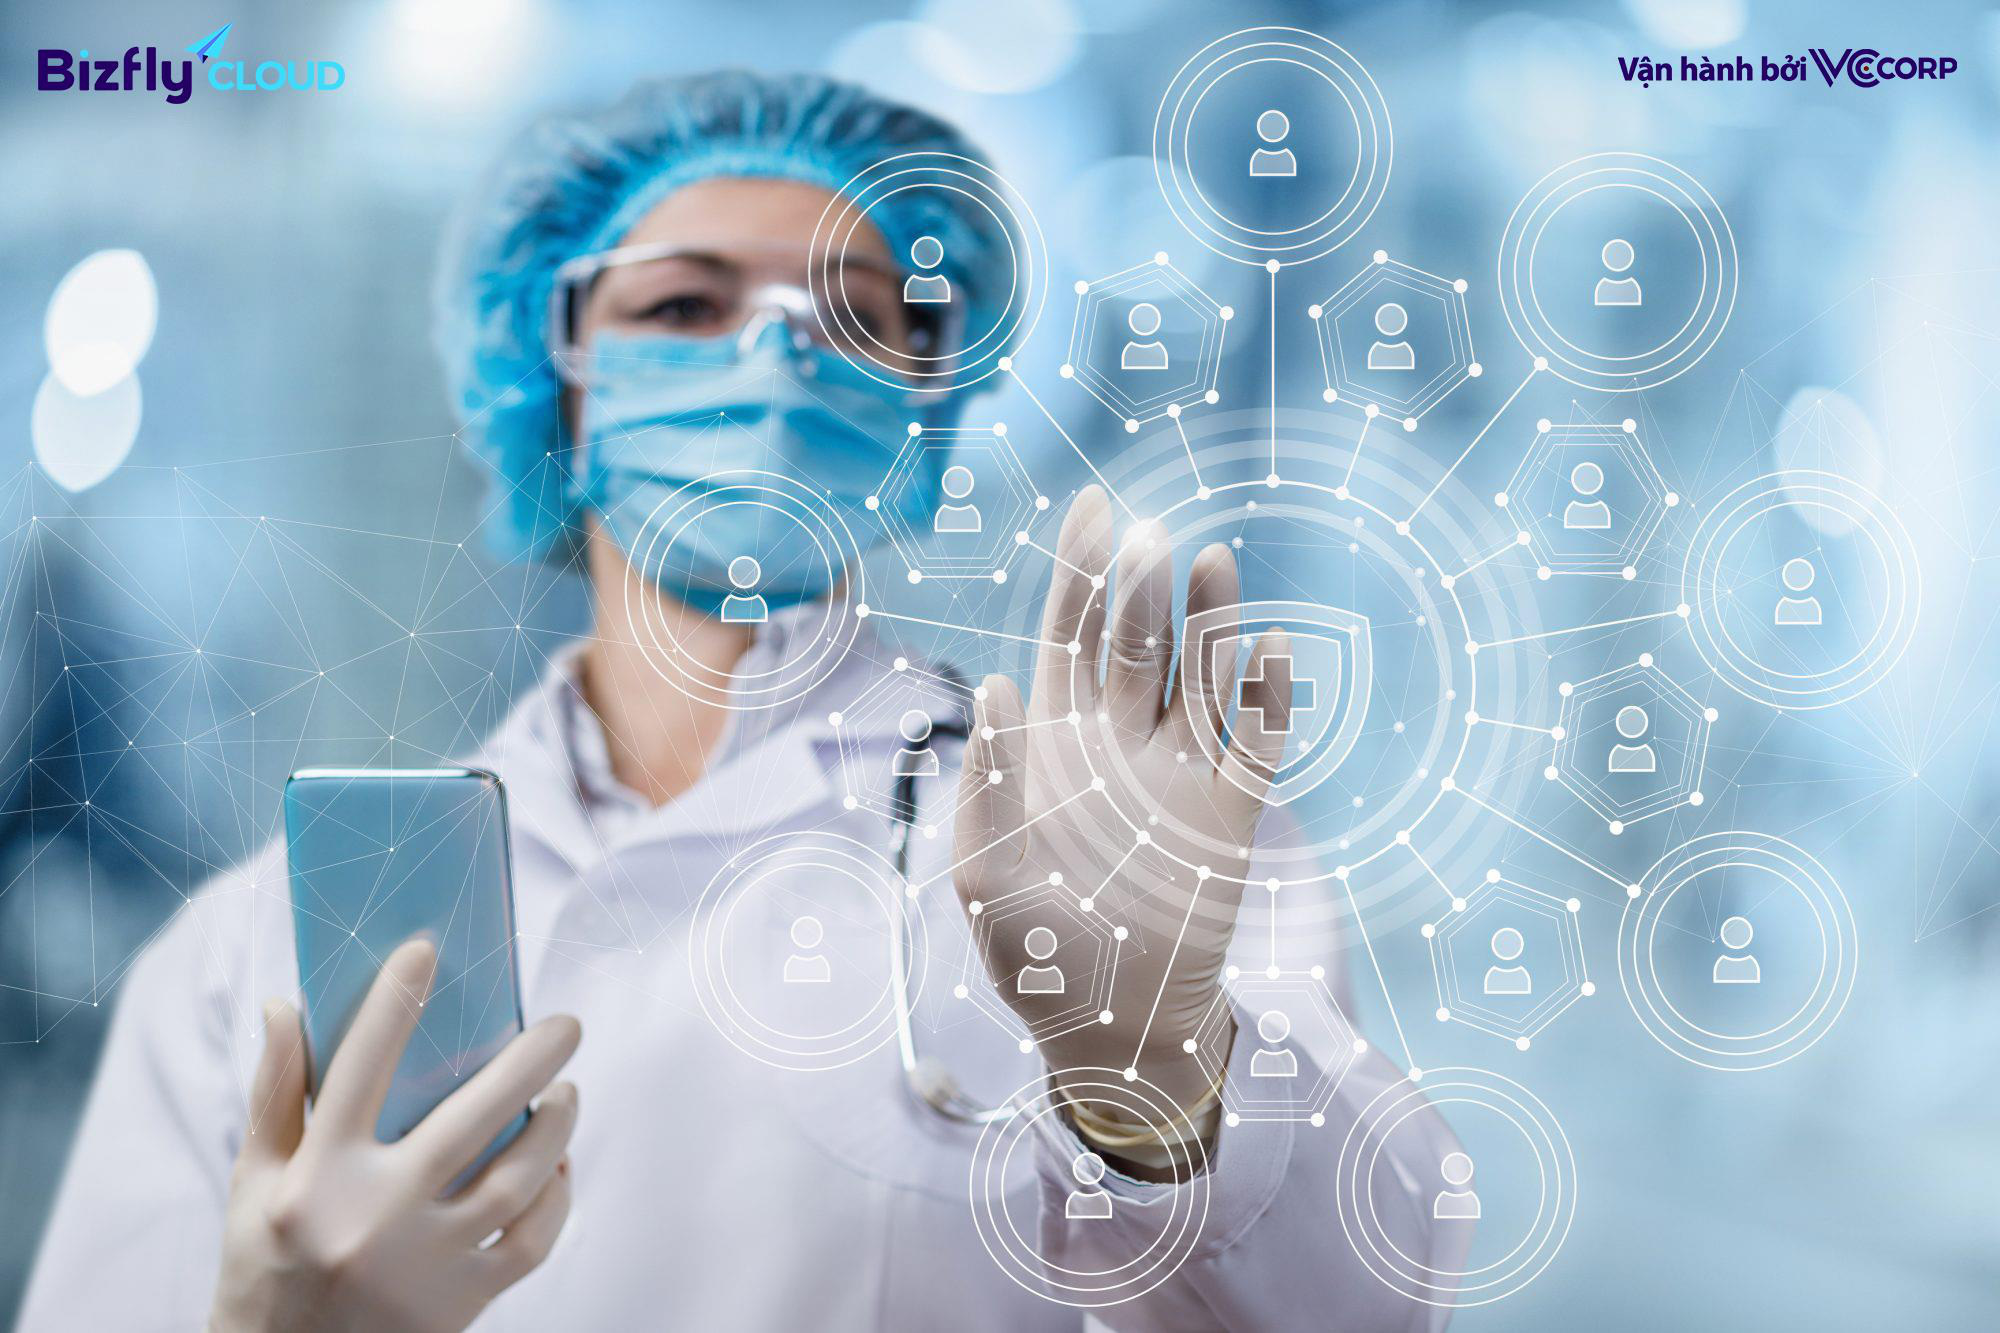 Kubernetes - Công nghệ mở ra kỷ nguyên mới cho các ứng dụng y tế thông minh - Ảnh 2.